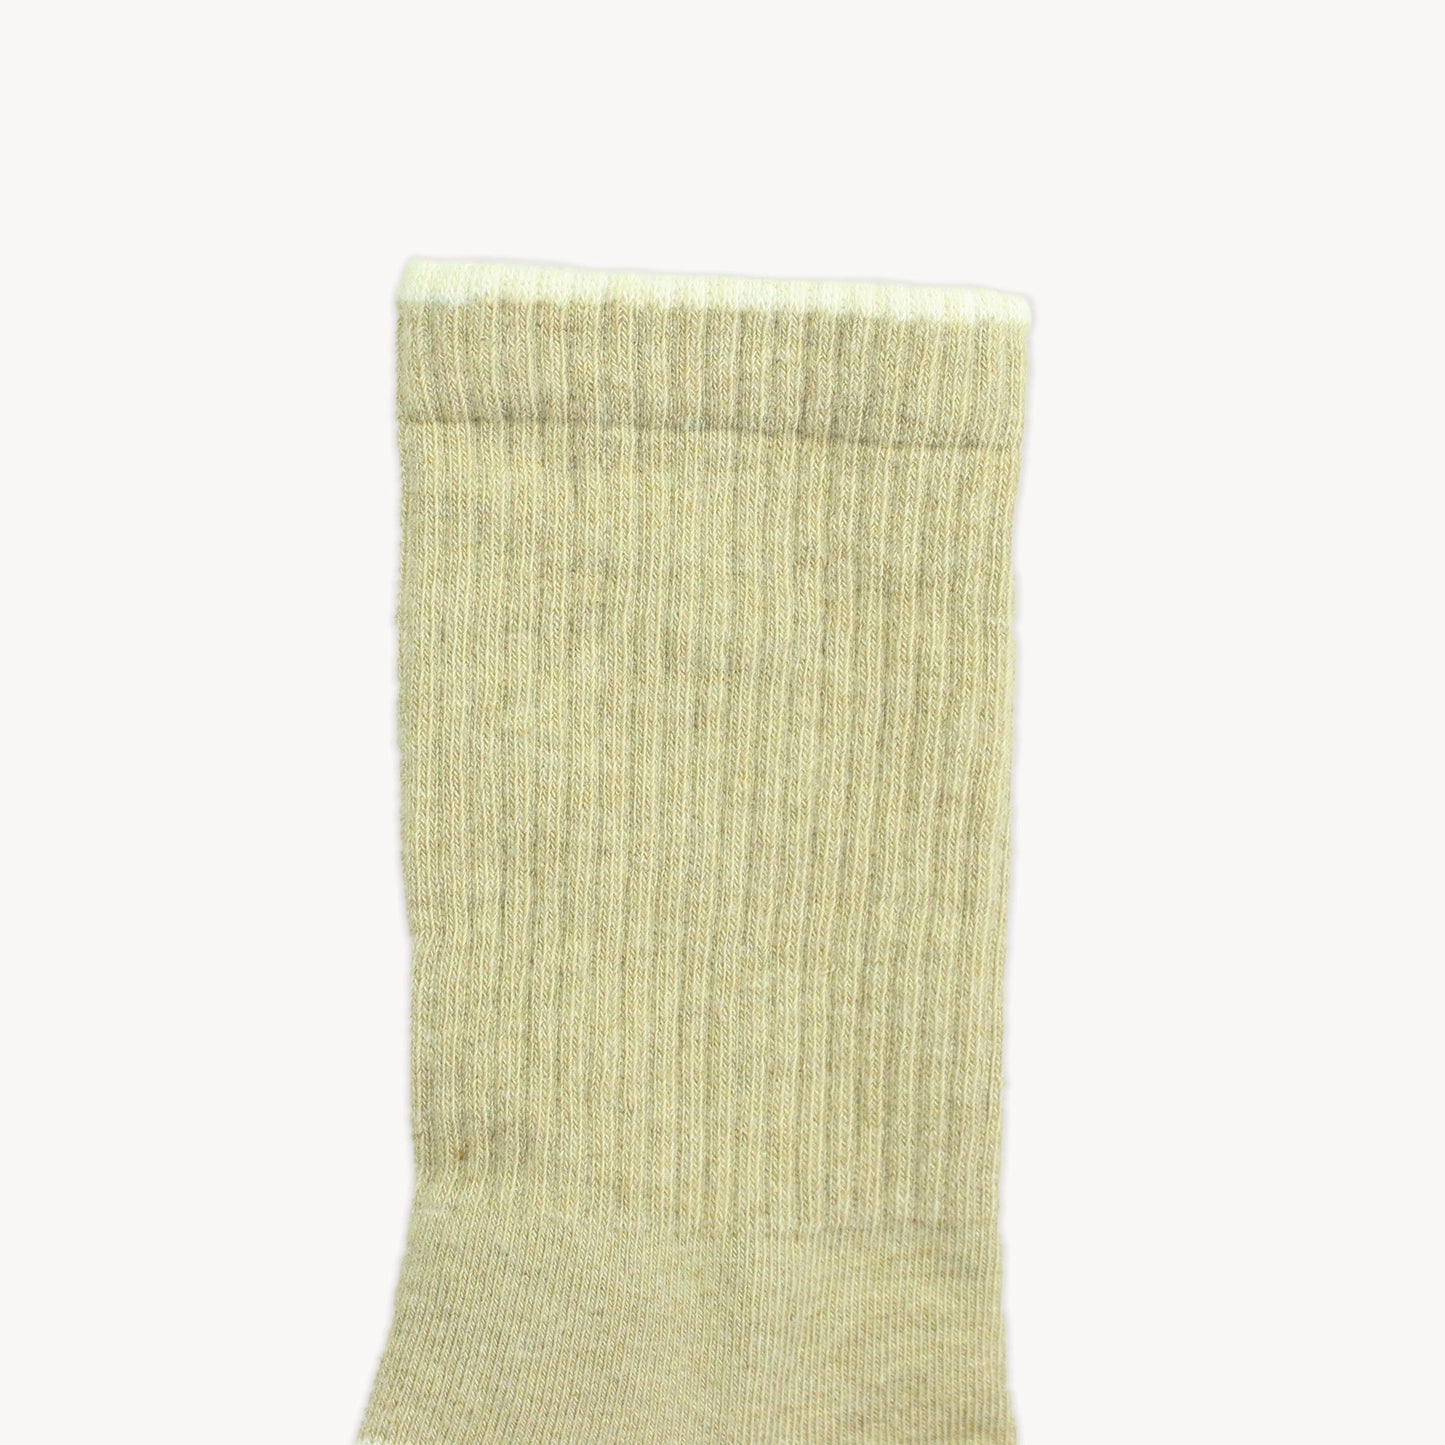 Heel Toe Socks - Pack of 2 by POKOLOKO